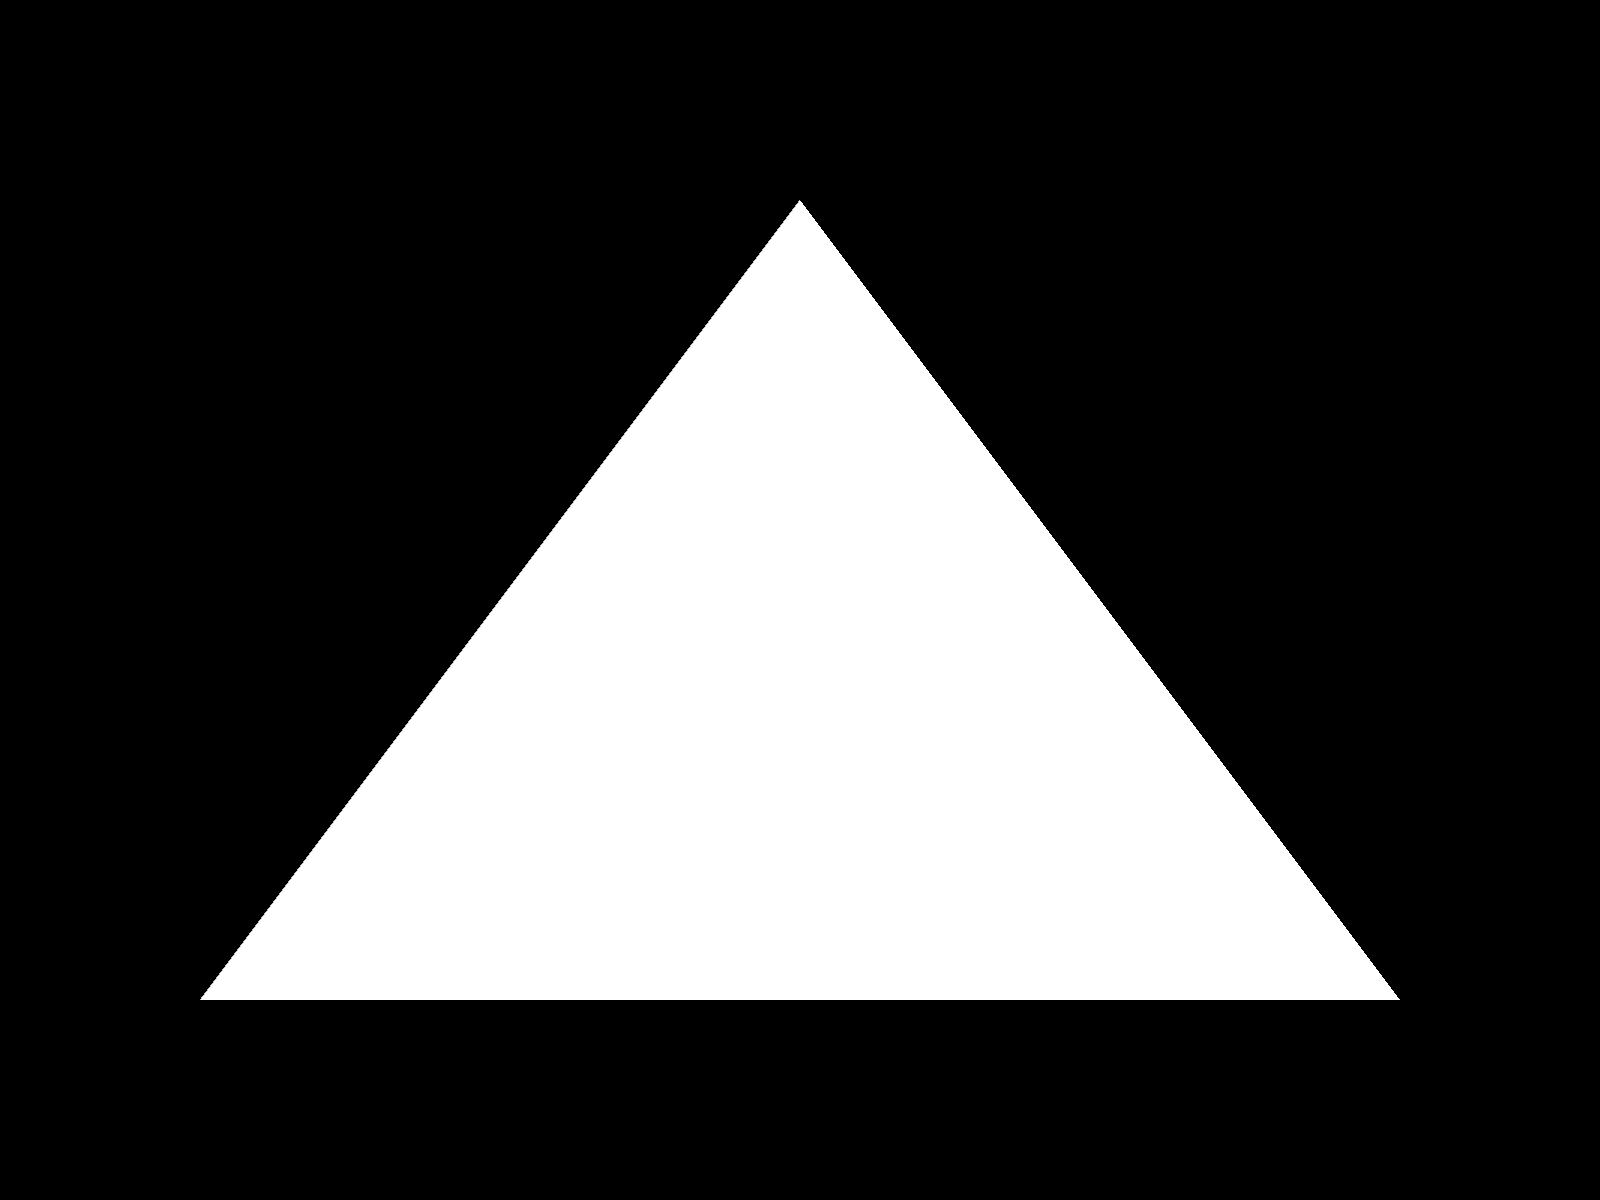 draw_triangle